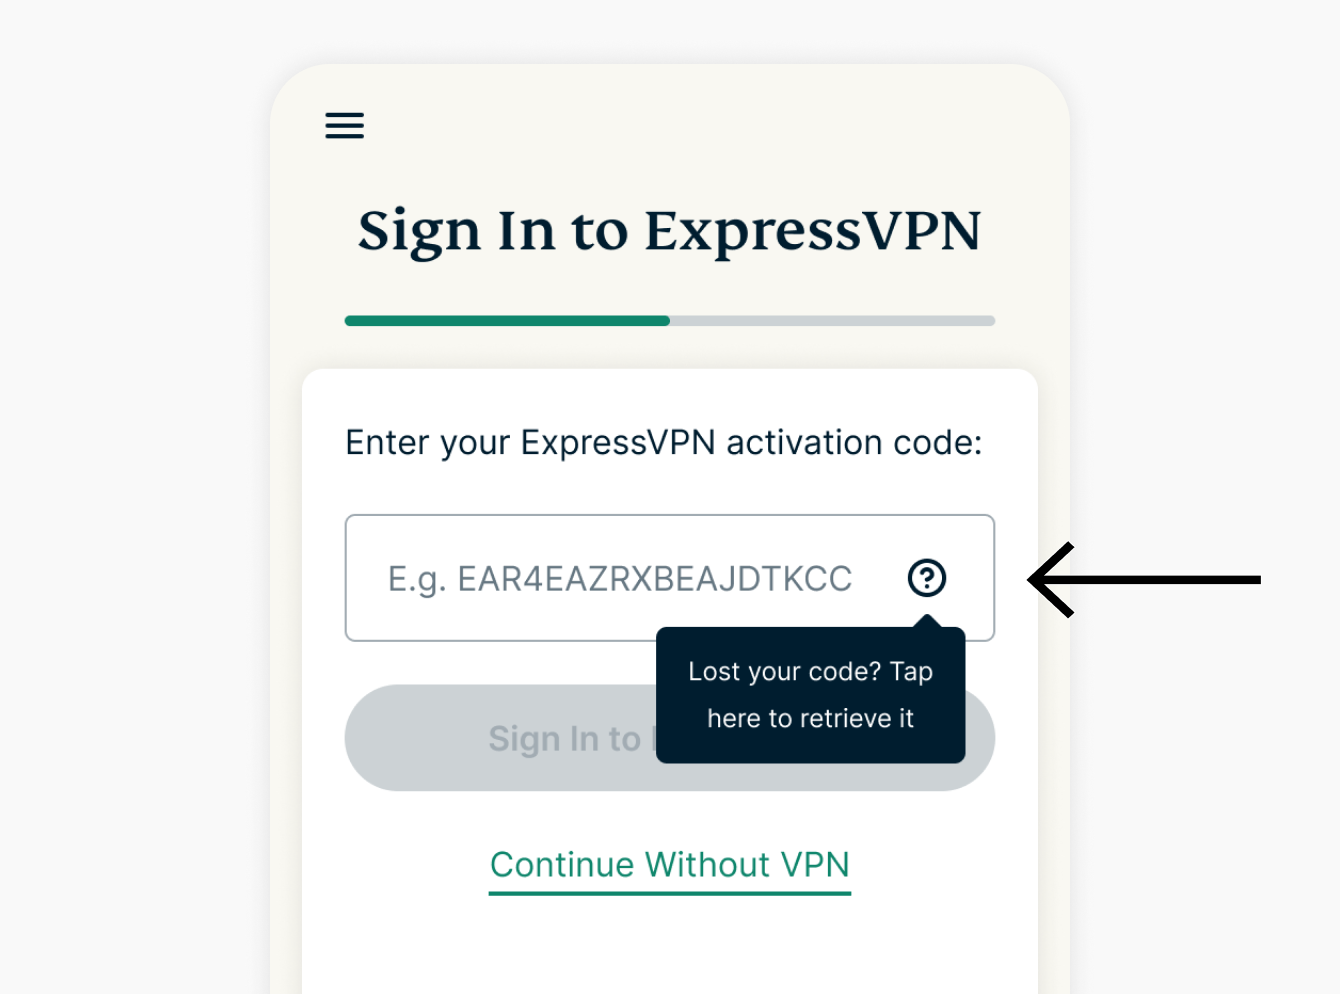 Anmeldung bei ExpressVPN Code vergessen